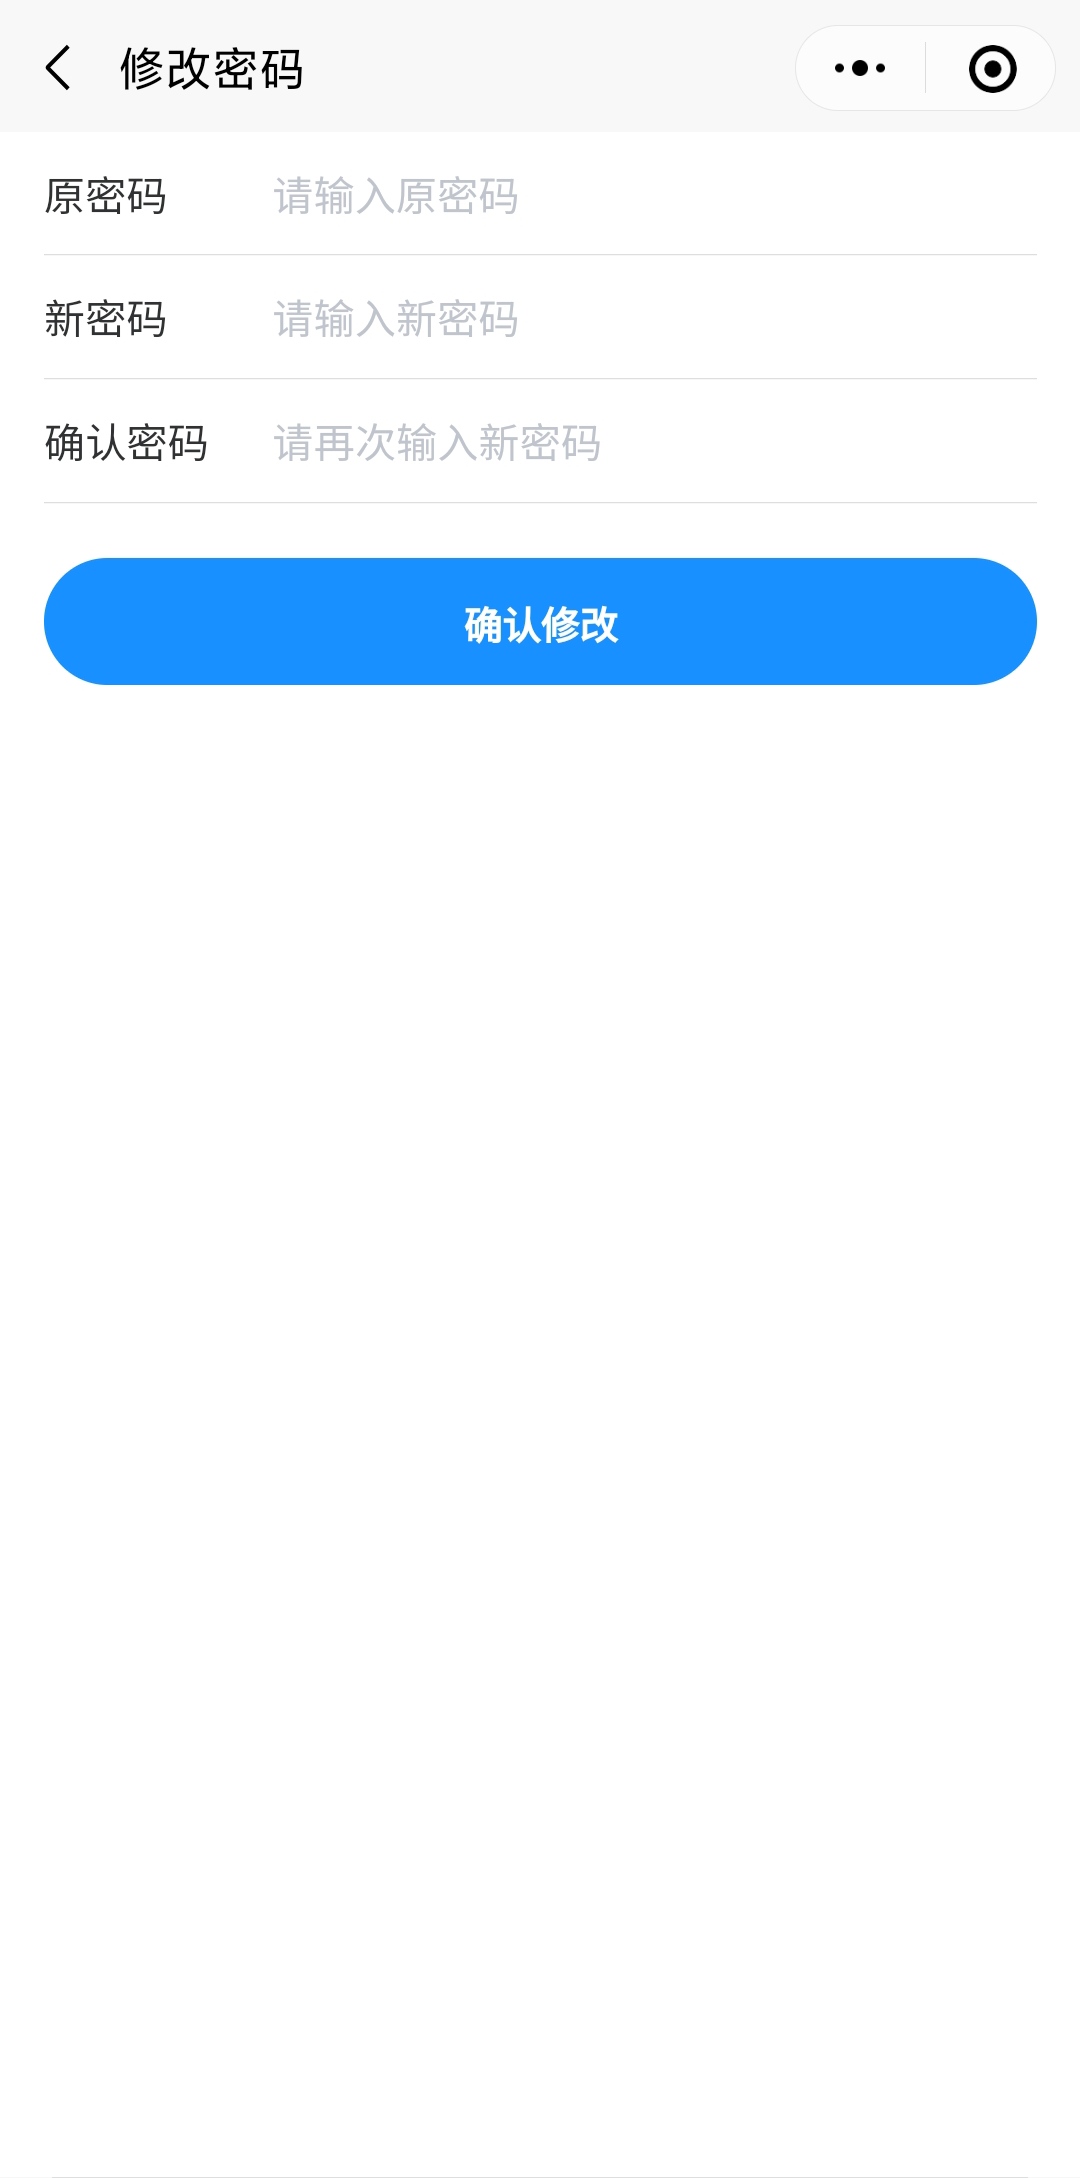 捷图  App Store截图登录test tagbattle页